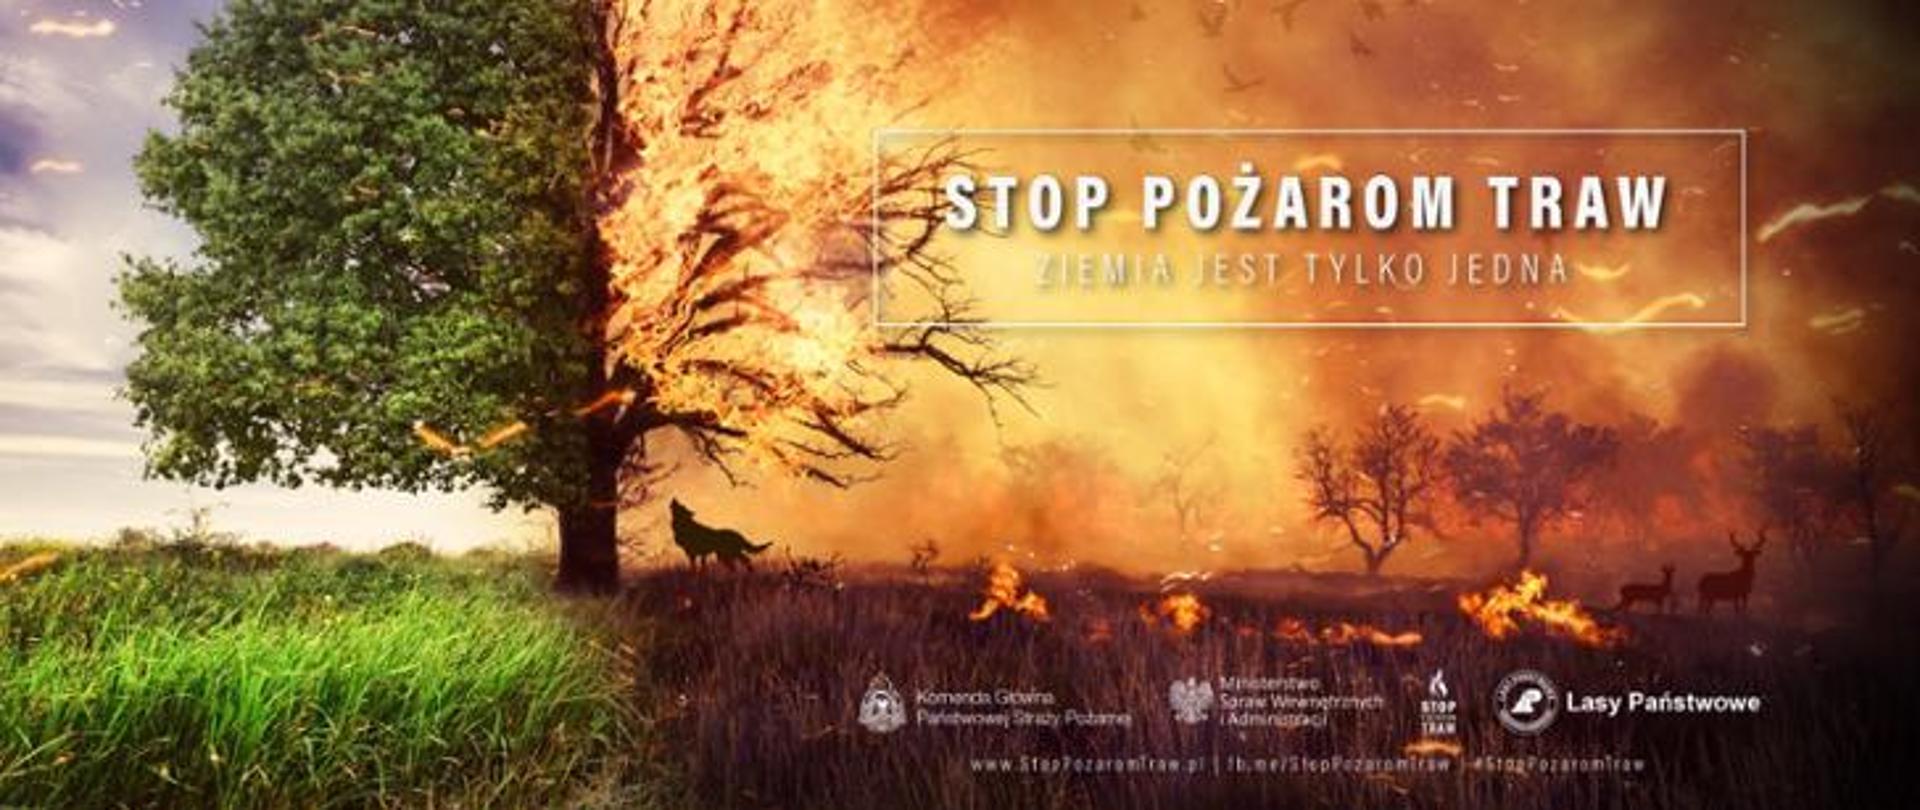 Kampania stop pożarom traw. Na obrazku pół drzewa objętego pożarem wraz zwierzyną leśną. 